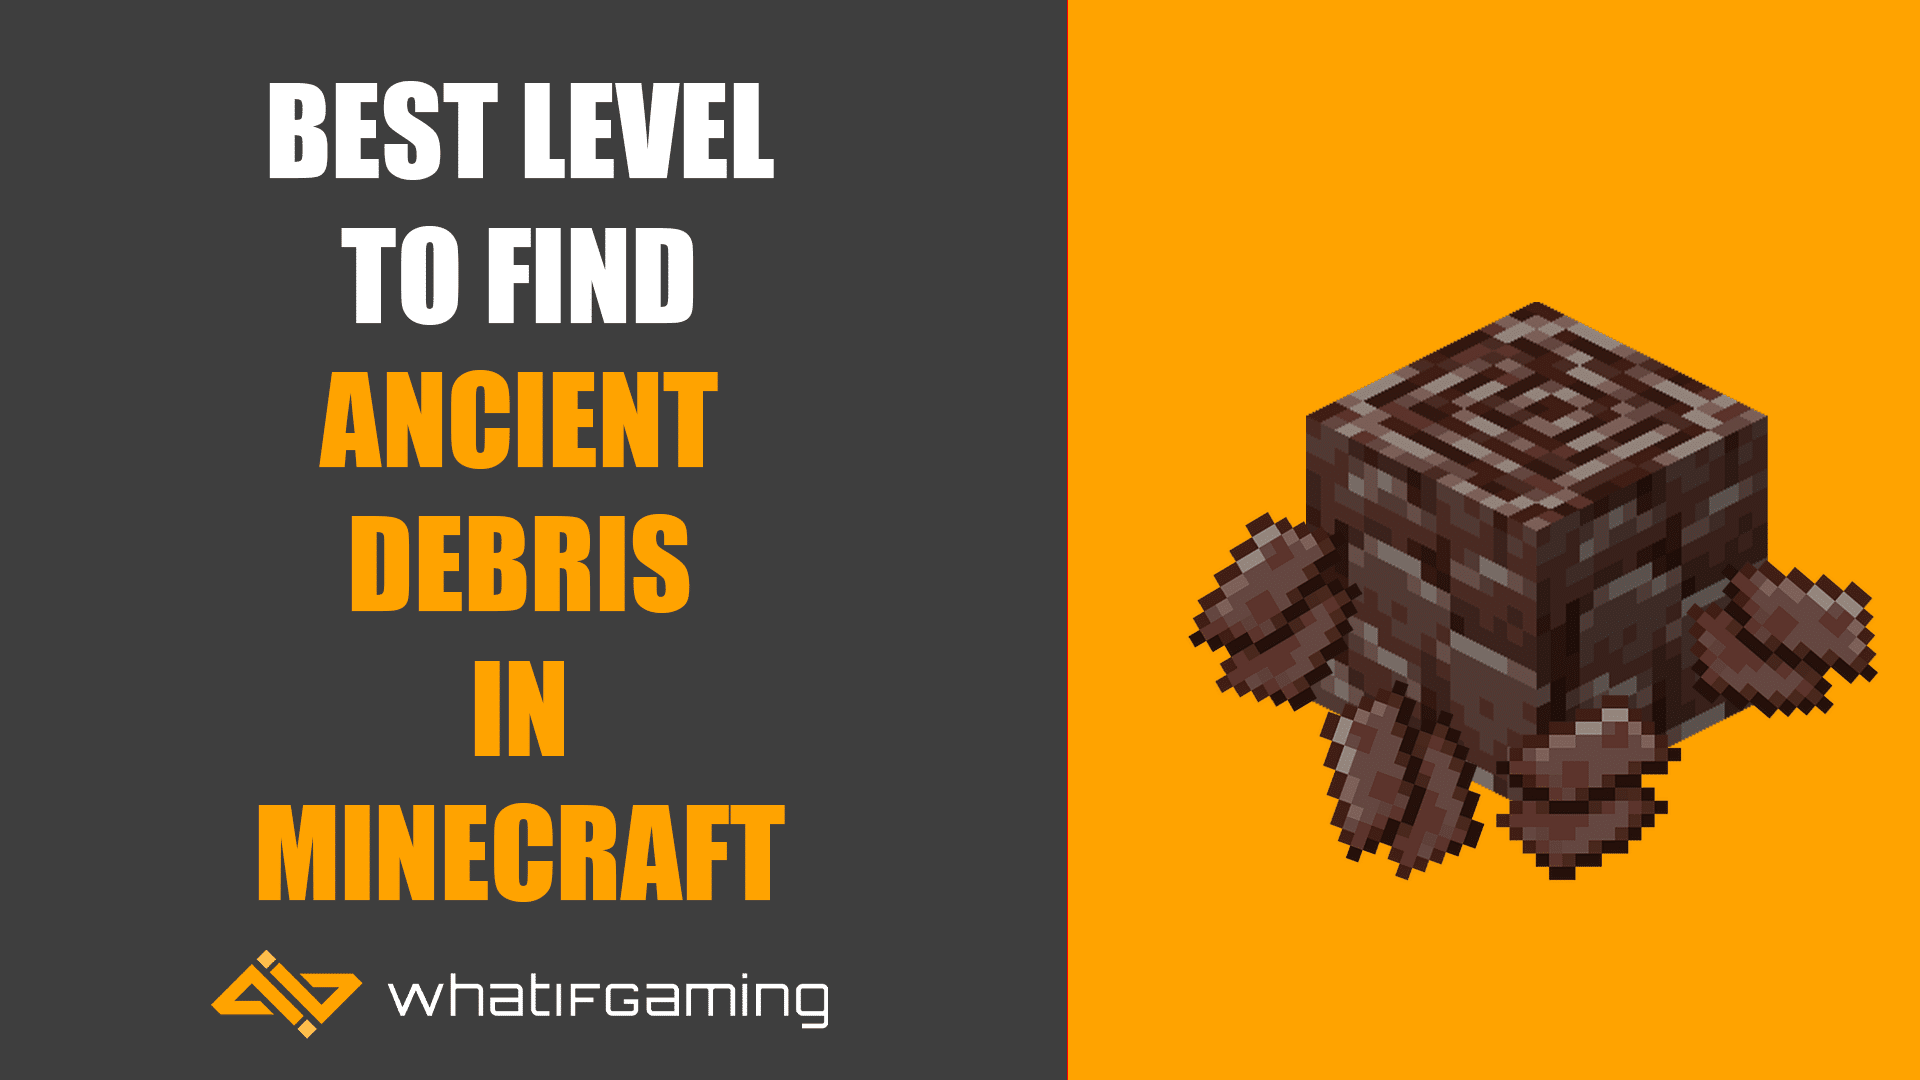 Best level to mine Ancient Debris at in Minecraft?